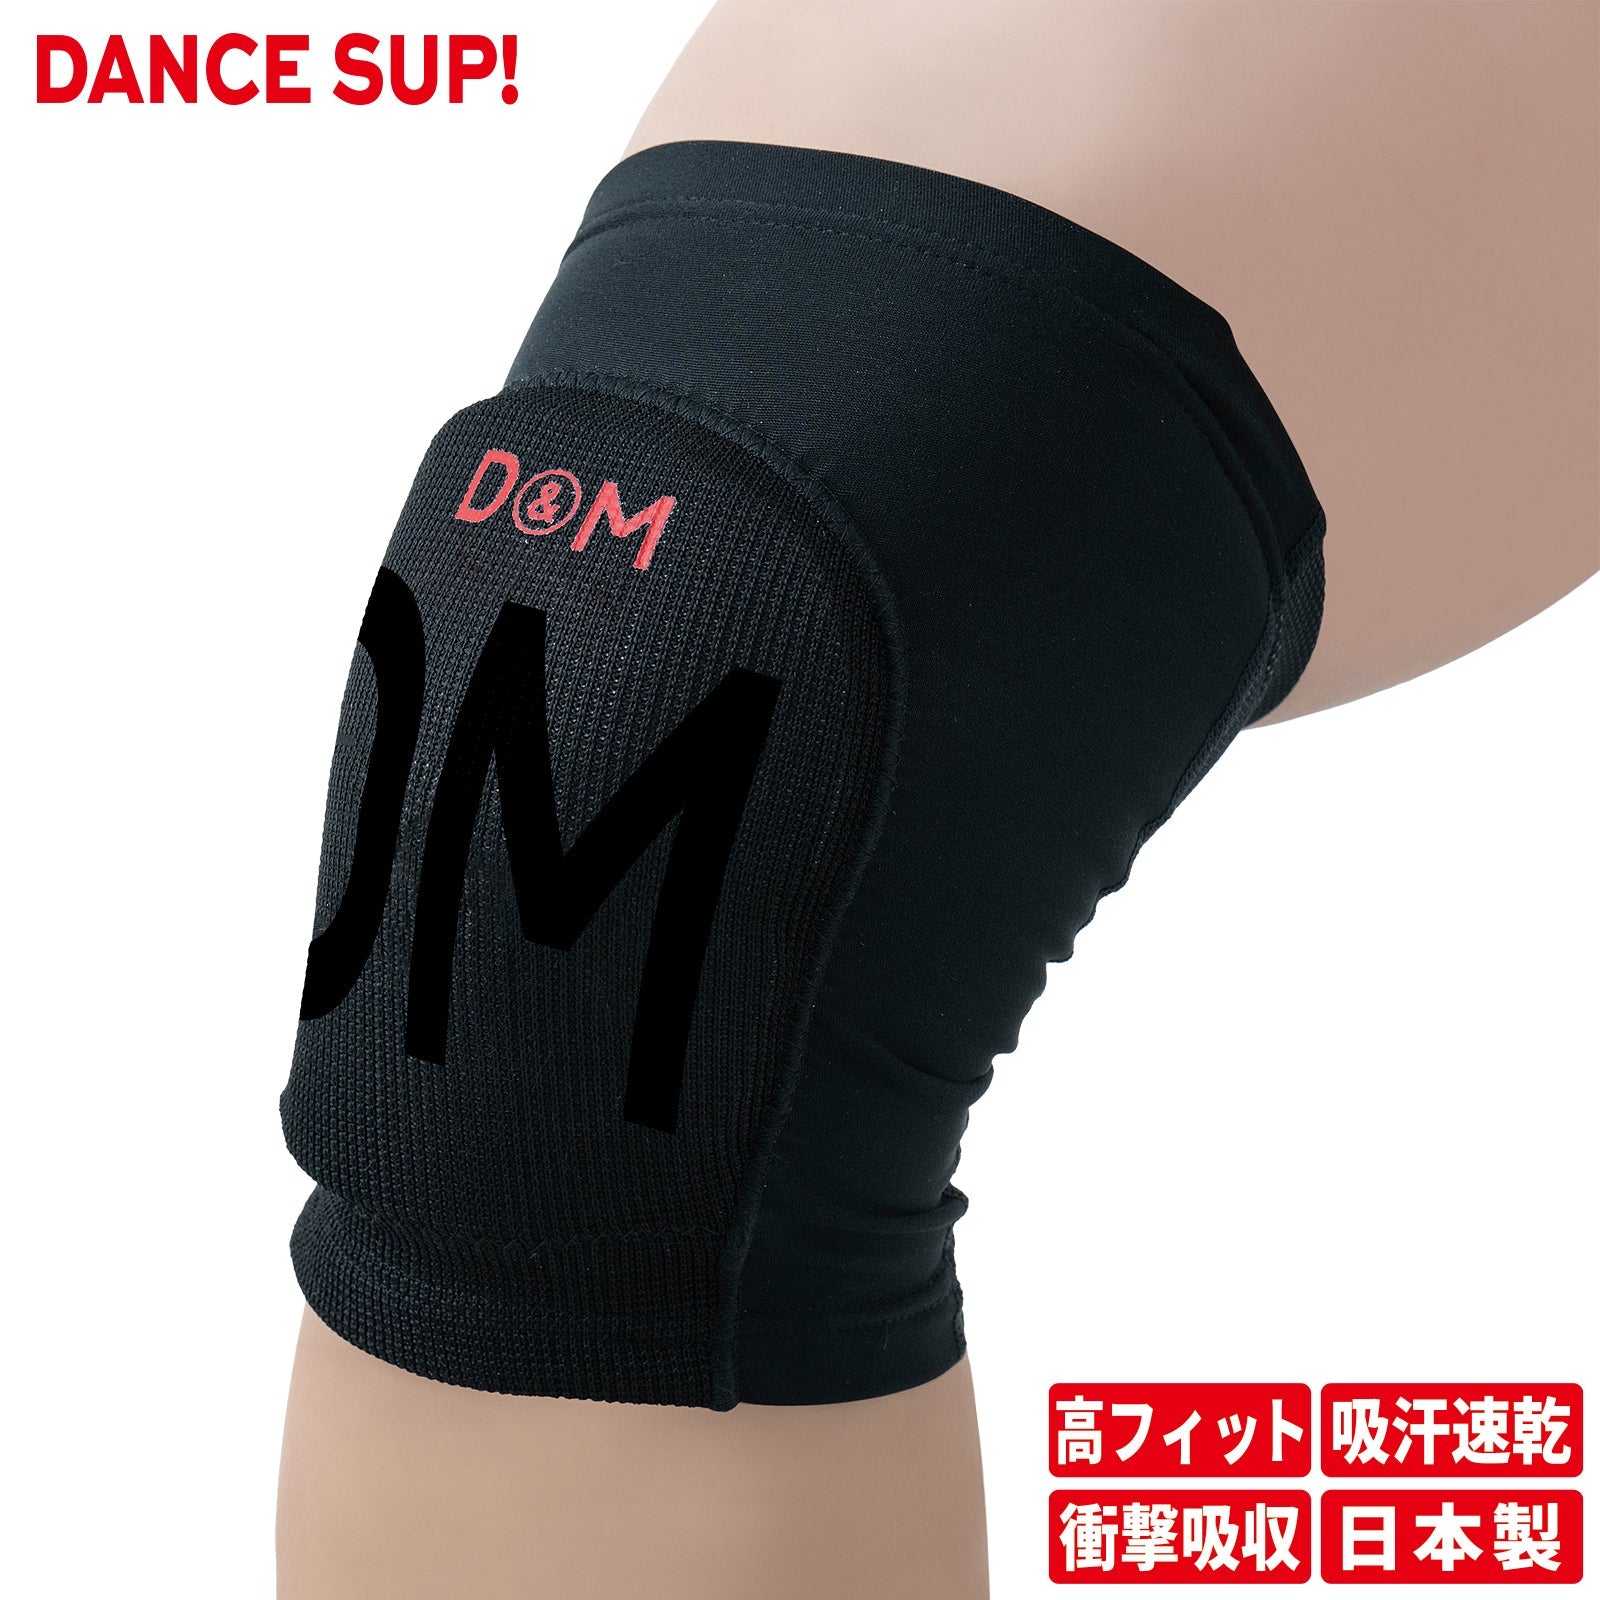 【DANCE SUP!】膝サポーター 膝用 ダンス用 10mm厚 パッド付き ダンスサップ 黒 ブラック 左右兼用 1個入 日本製 #SUP-809